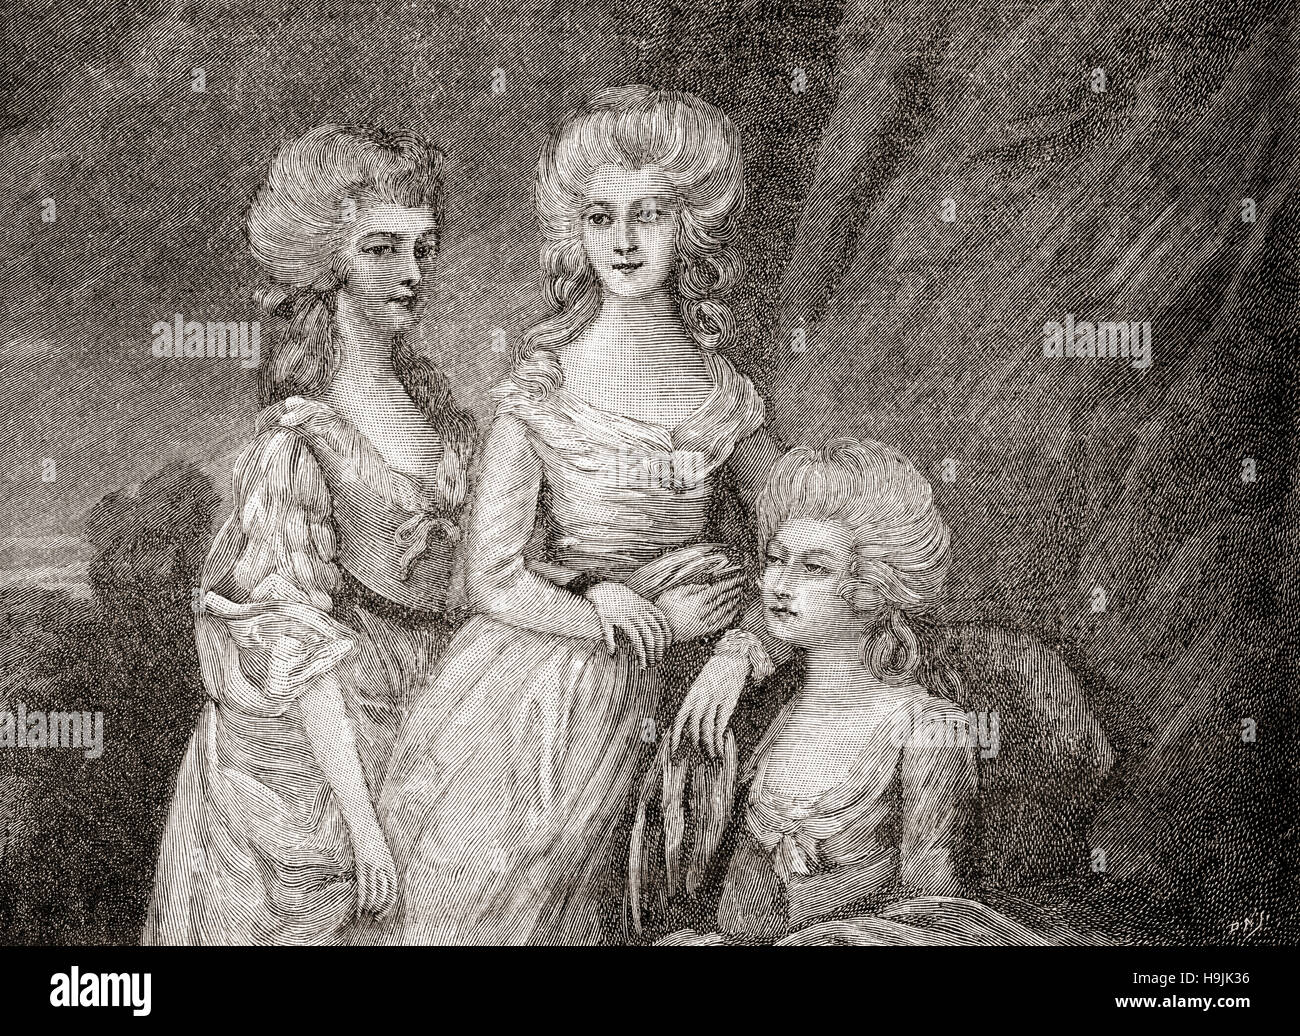 Las tres hijas mayores del rey George III. De izquierda a derecha: Charlotte, Princess Royal, 1766 -1828. Ella era la reina de Württemberg, como la esposa del Rey Federico; la princesa Augusta Sophia del Reino Unido, 1768 - 1840 y la princesa Elizabeth del Reino Unido, 1770 - 1840. Foto de stock